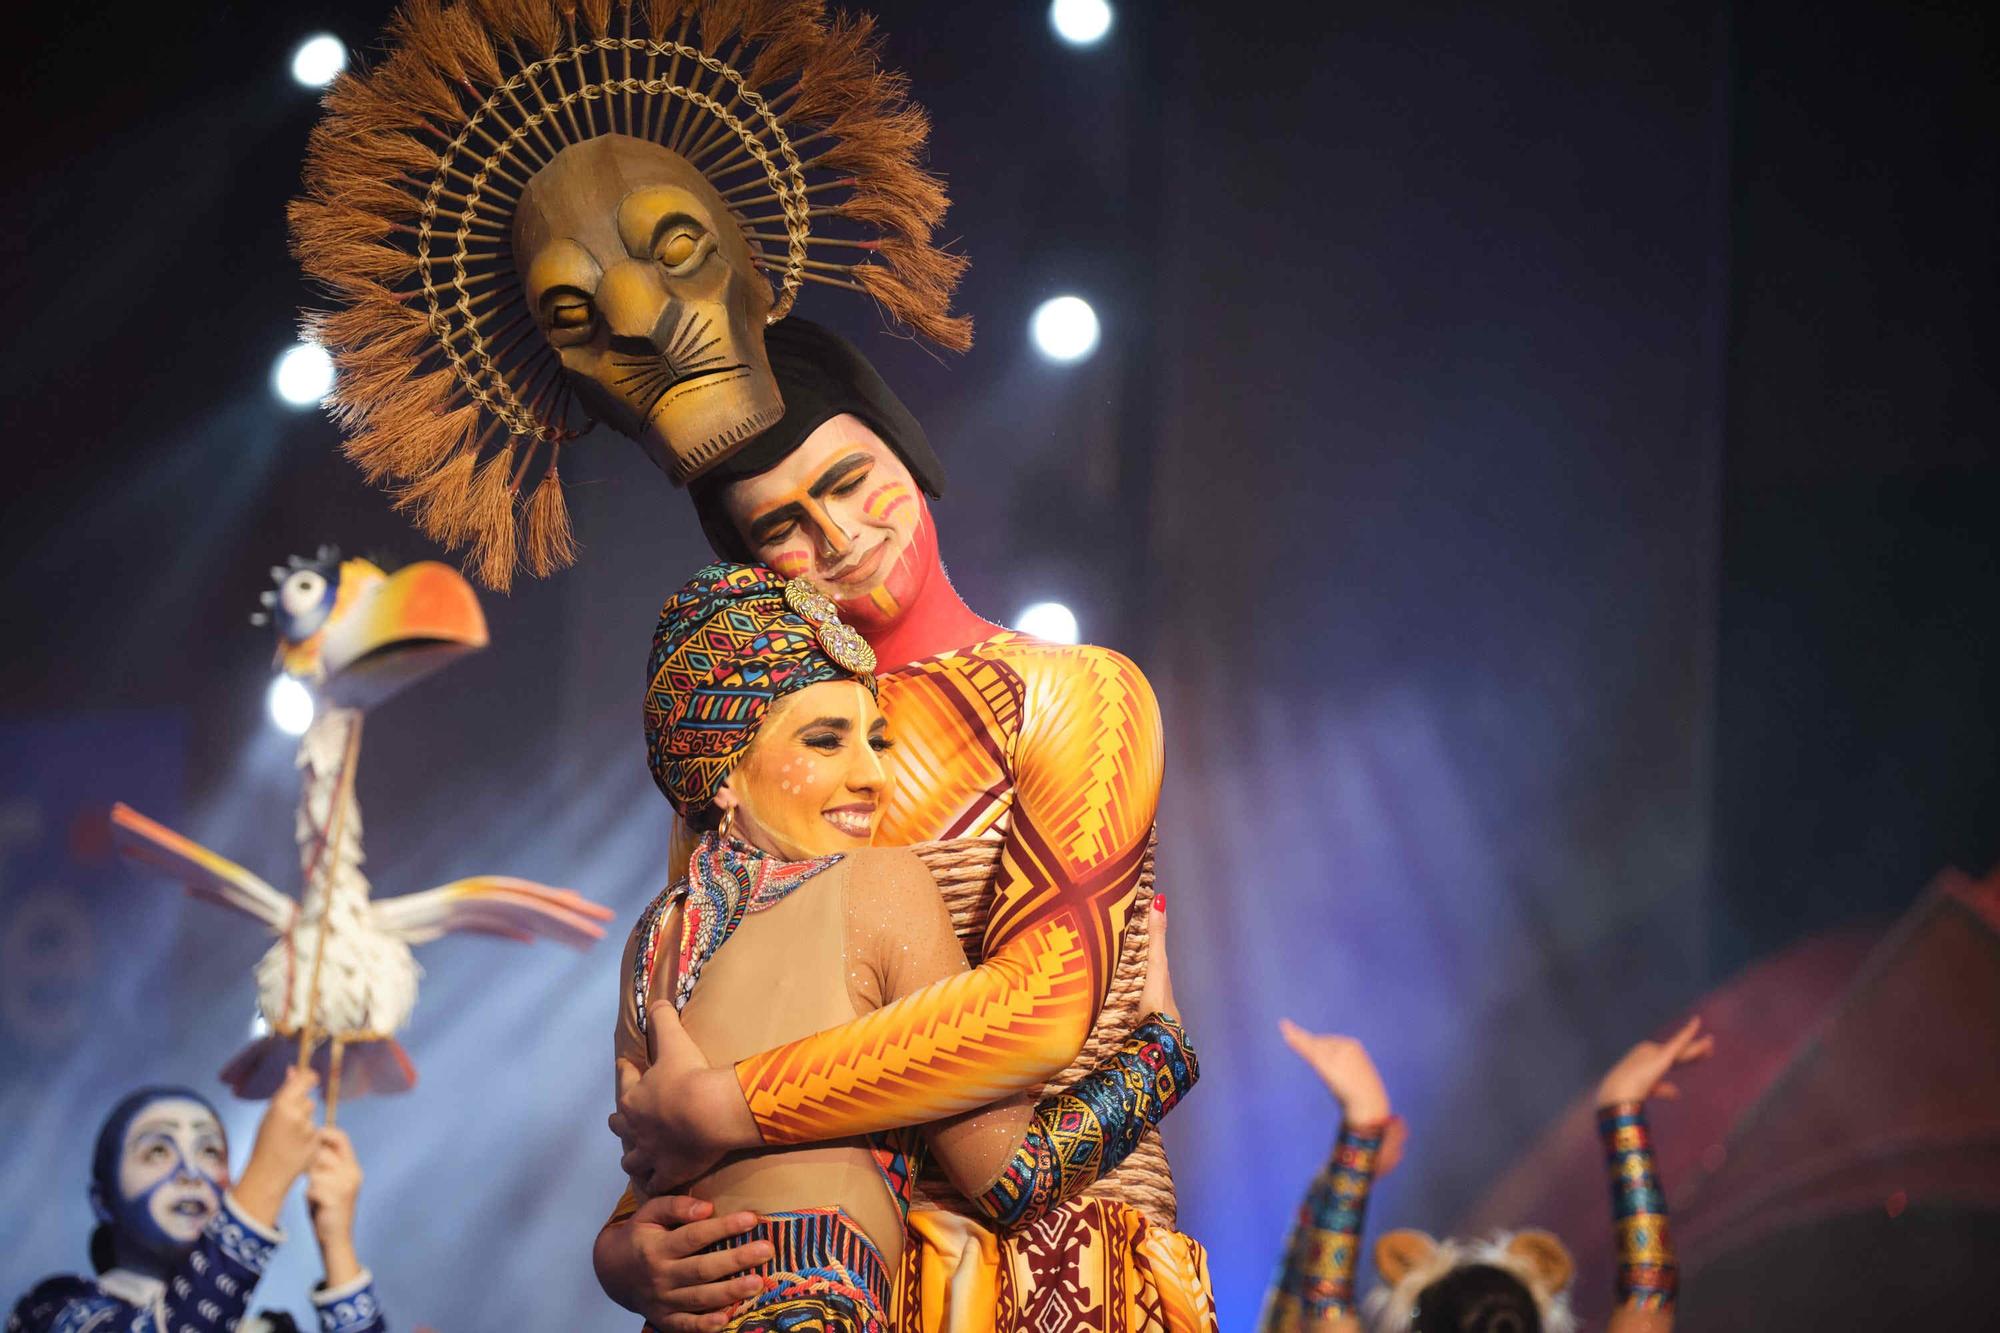 Festival coreográfico del Carnaval de Santa Cruz de Tenerife 2023